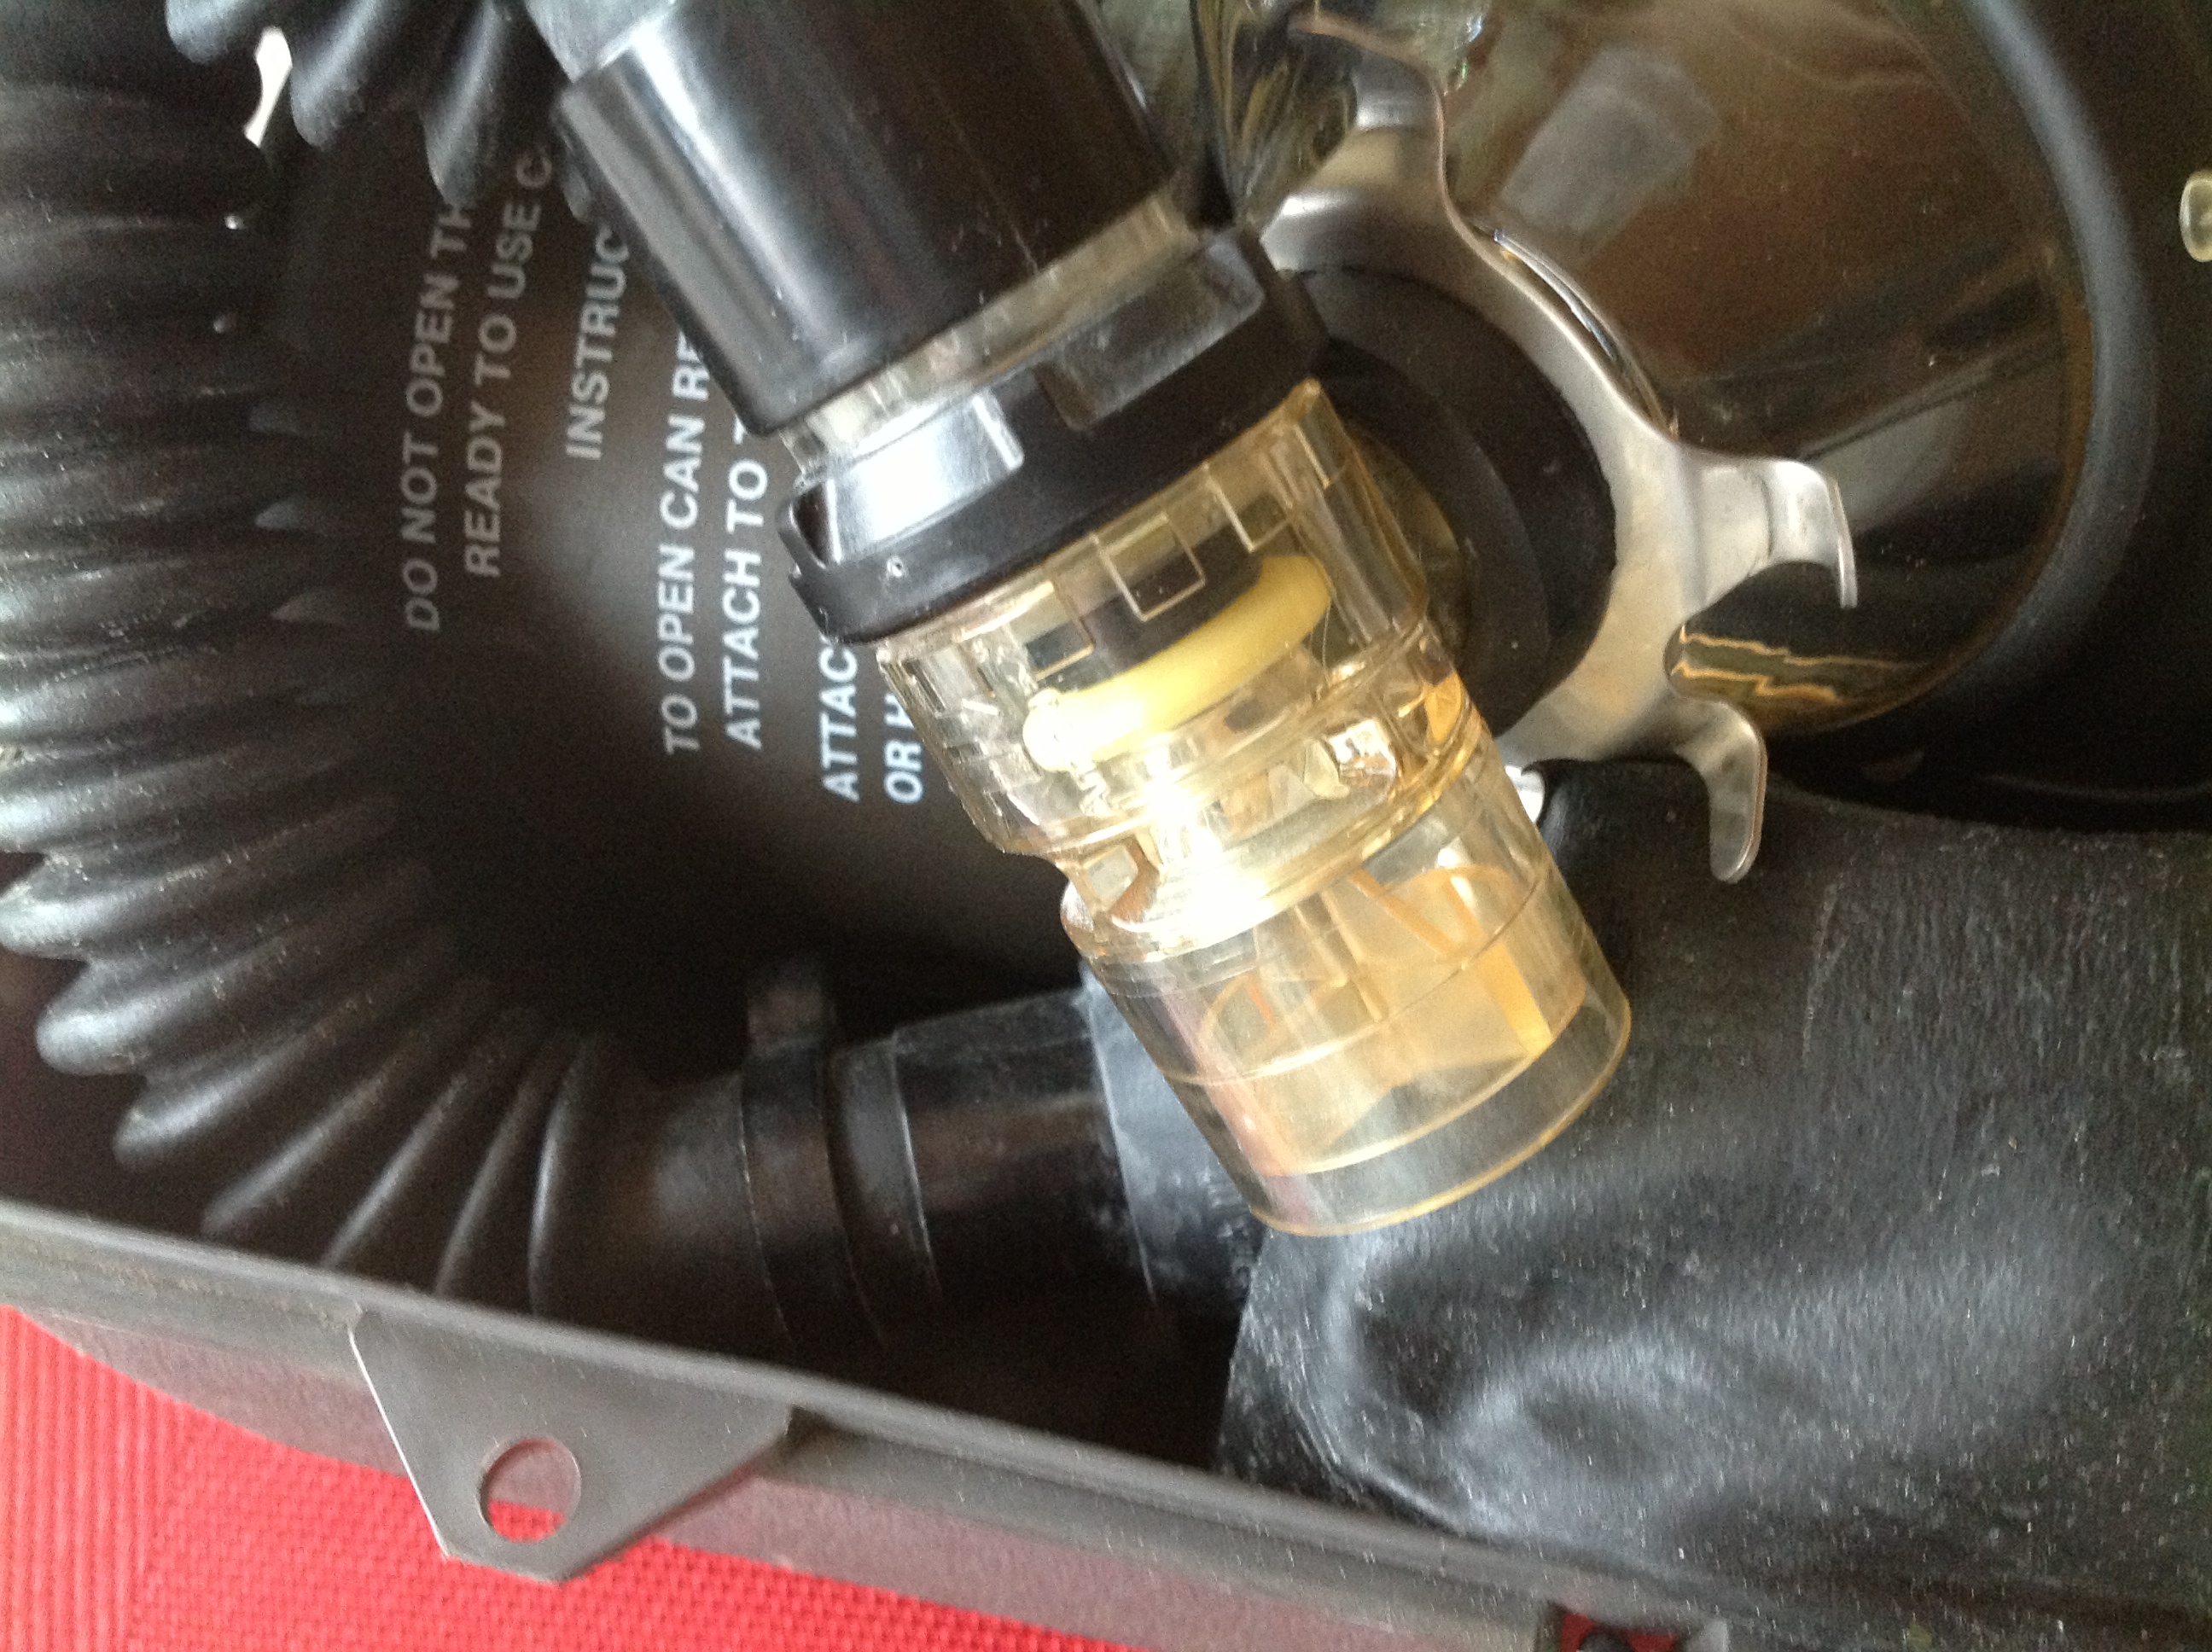 Atemschutz AMBV-Beutel mit Koffer und ABC-Filter